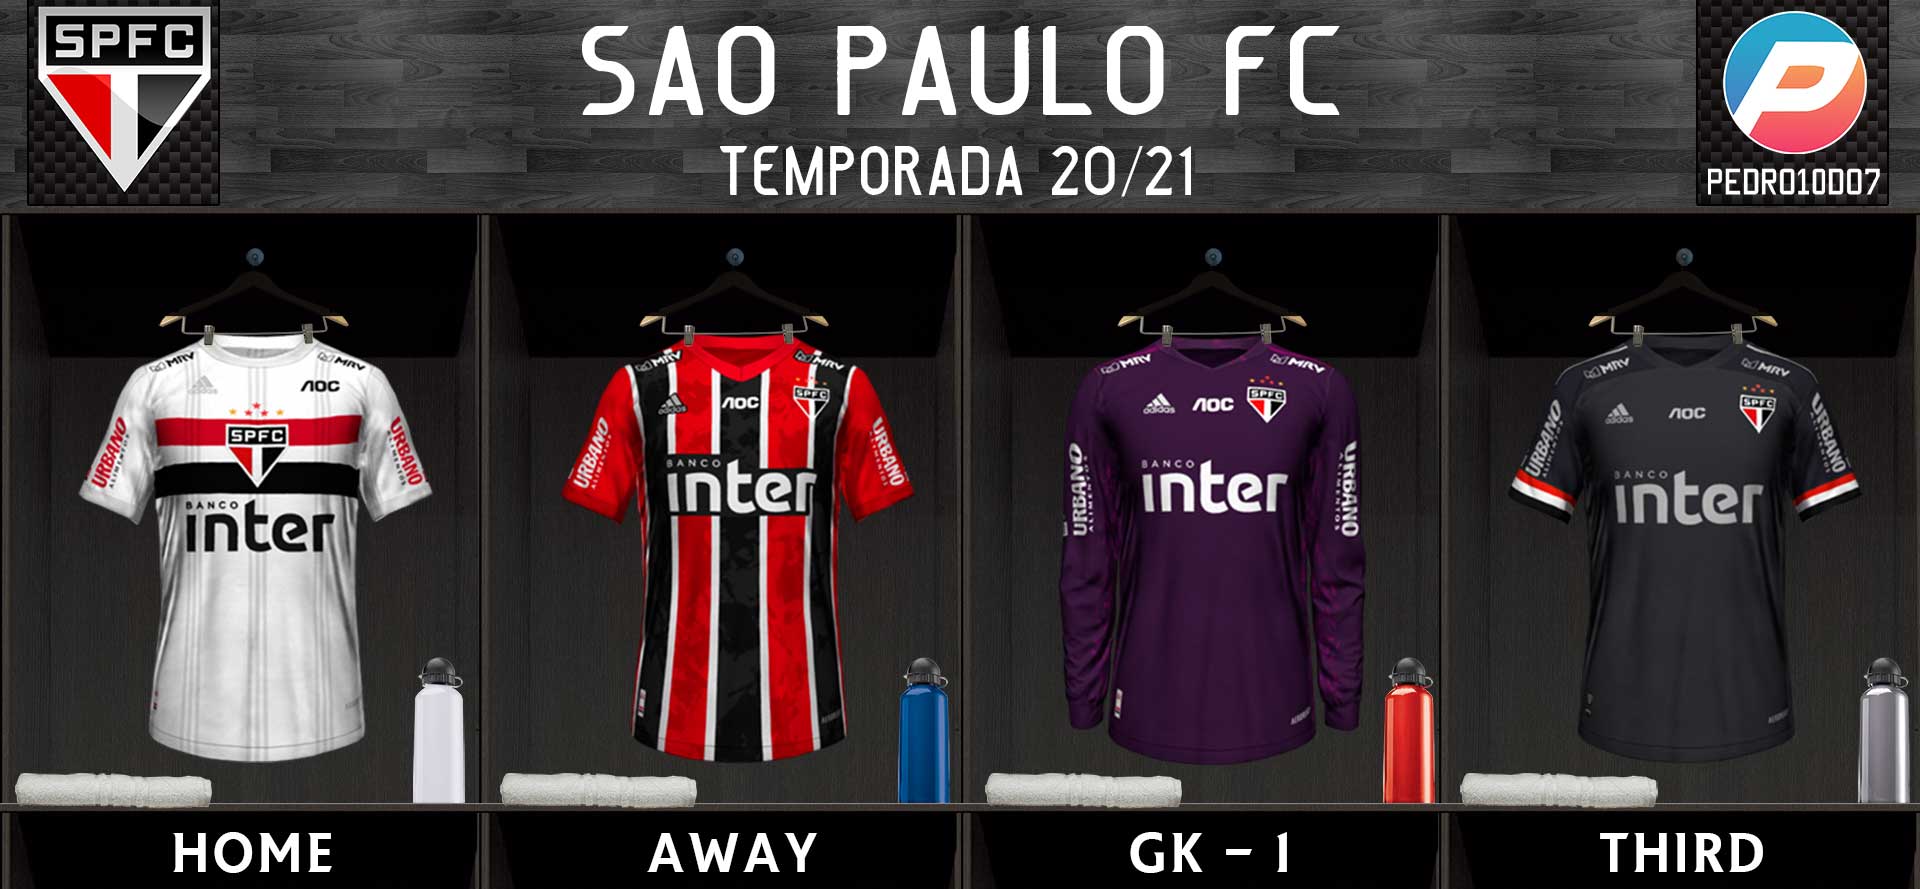 FIFA 21: uniforme do São Paulo aparece sem escudo em prévia do jogo, fifa